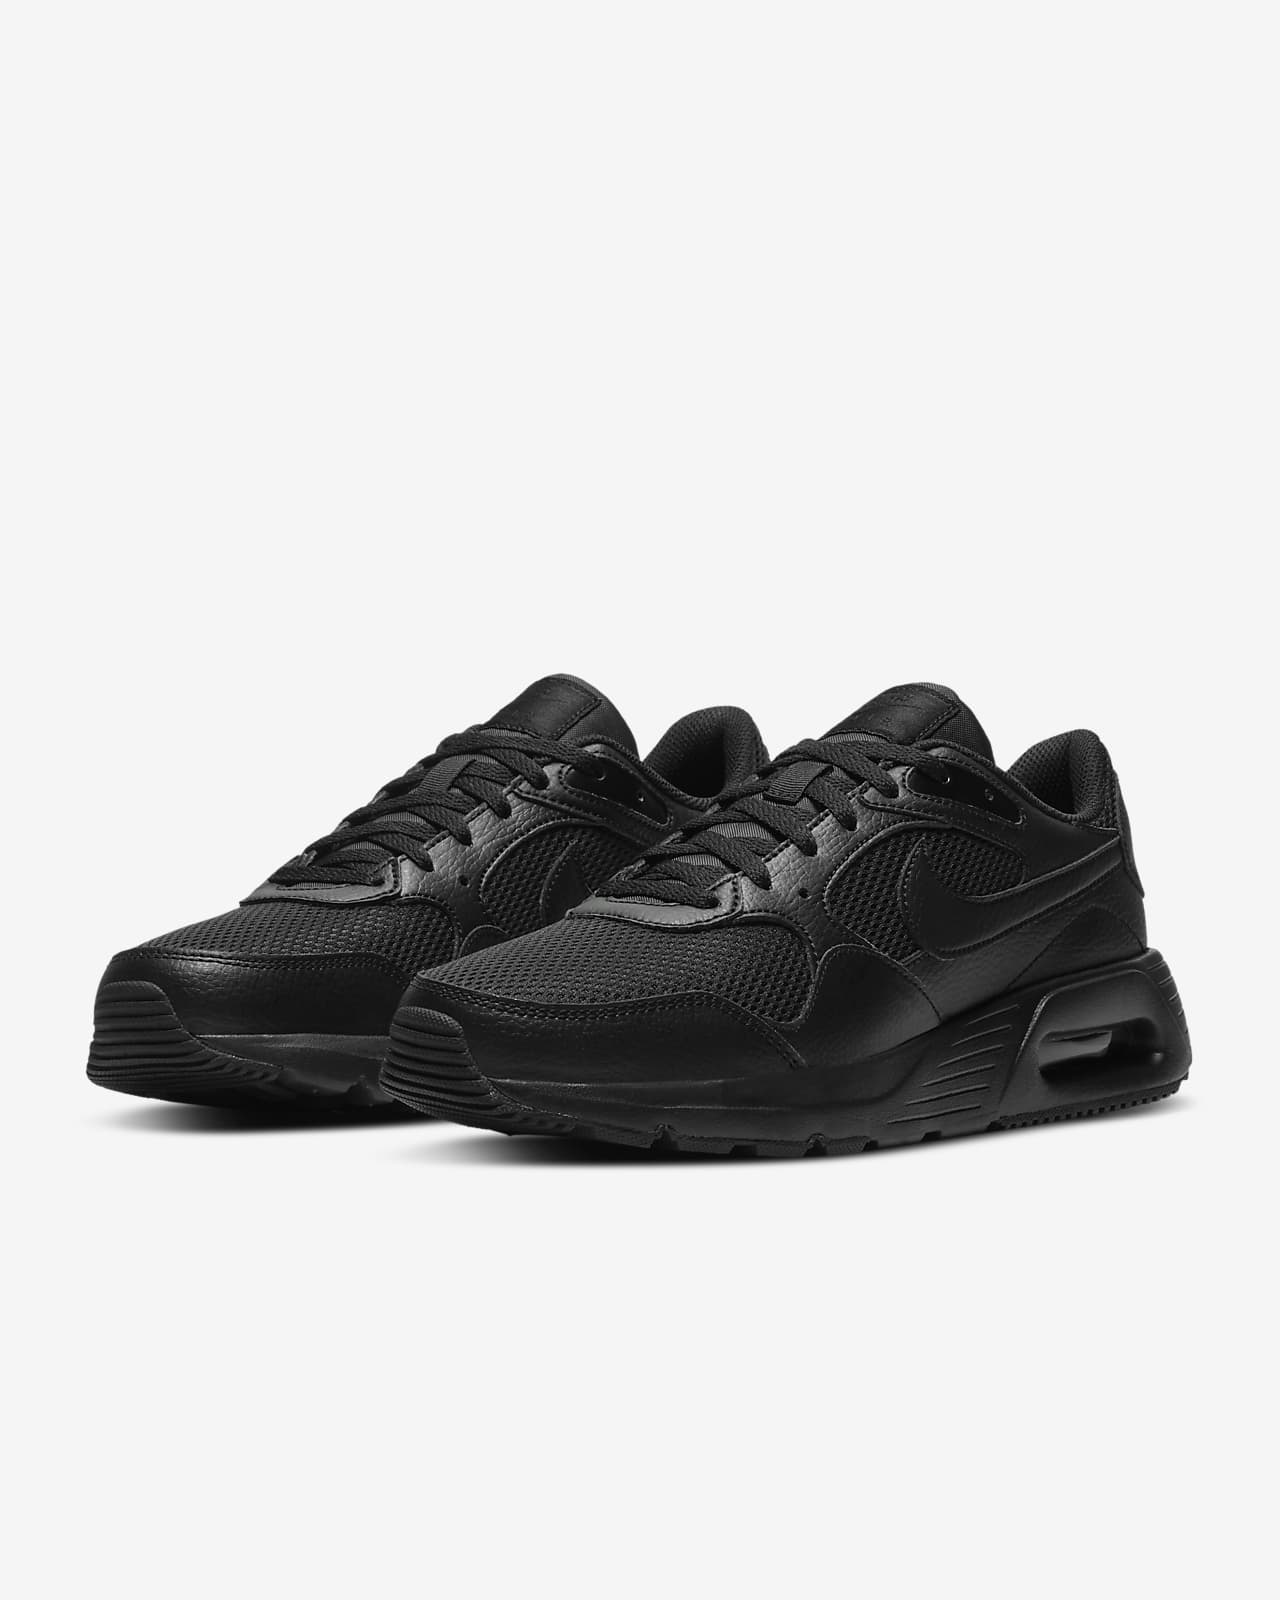 Nike Men\'s SC Shoes. Air Max